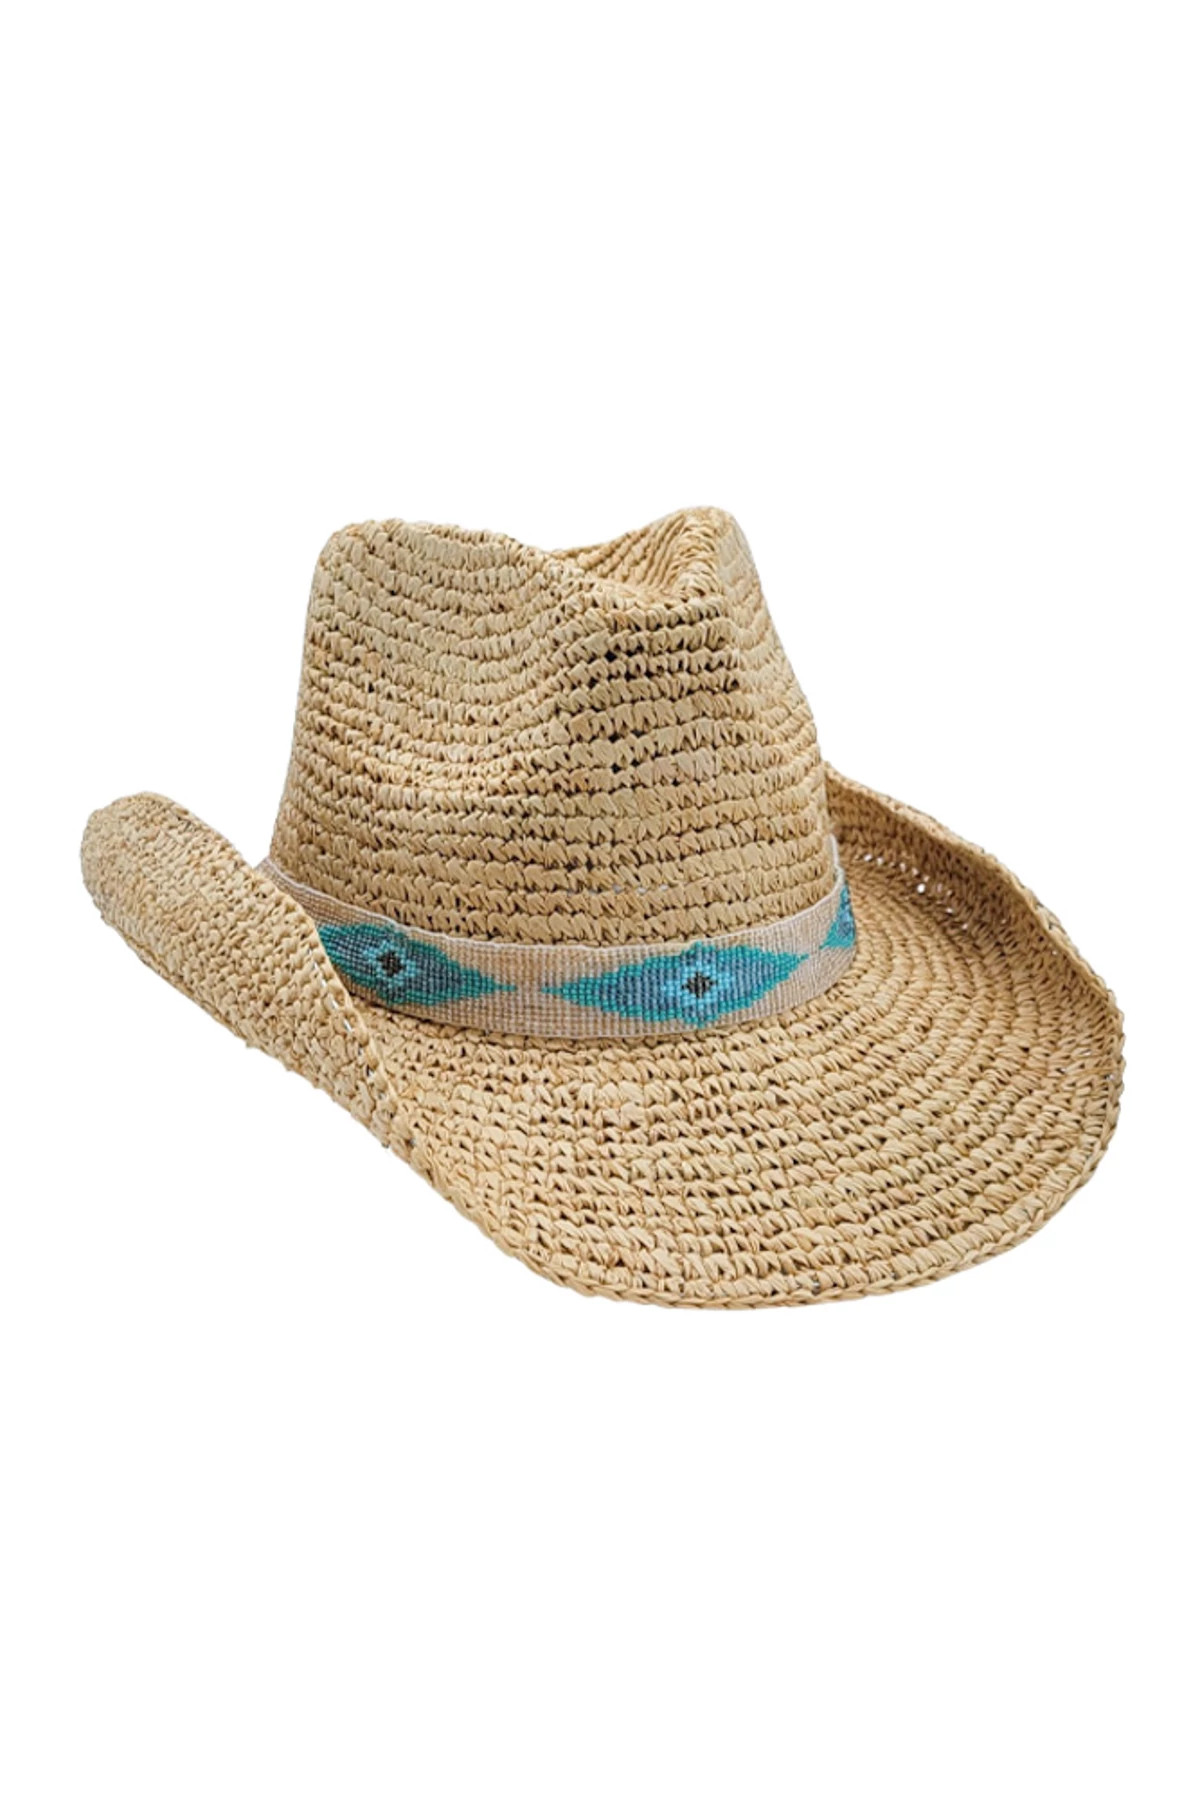 NATURAL Blue Jaye Cowboy Hat image number 1